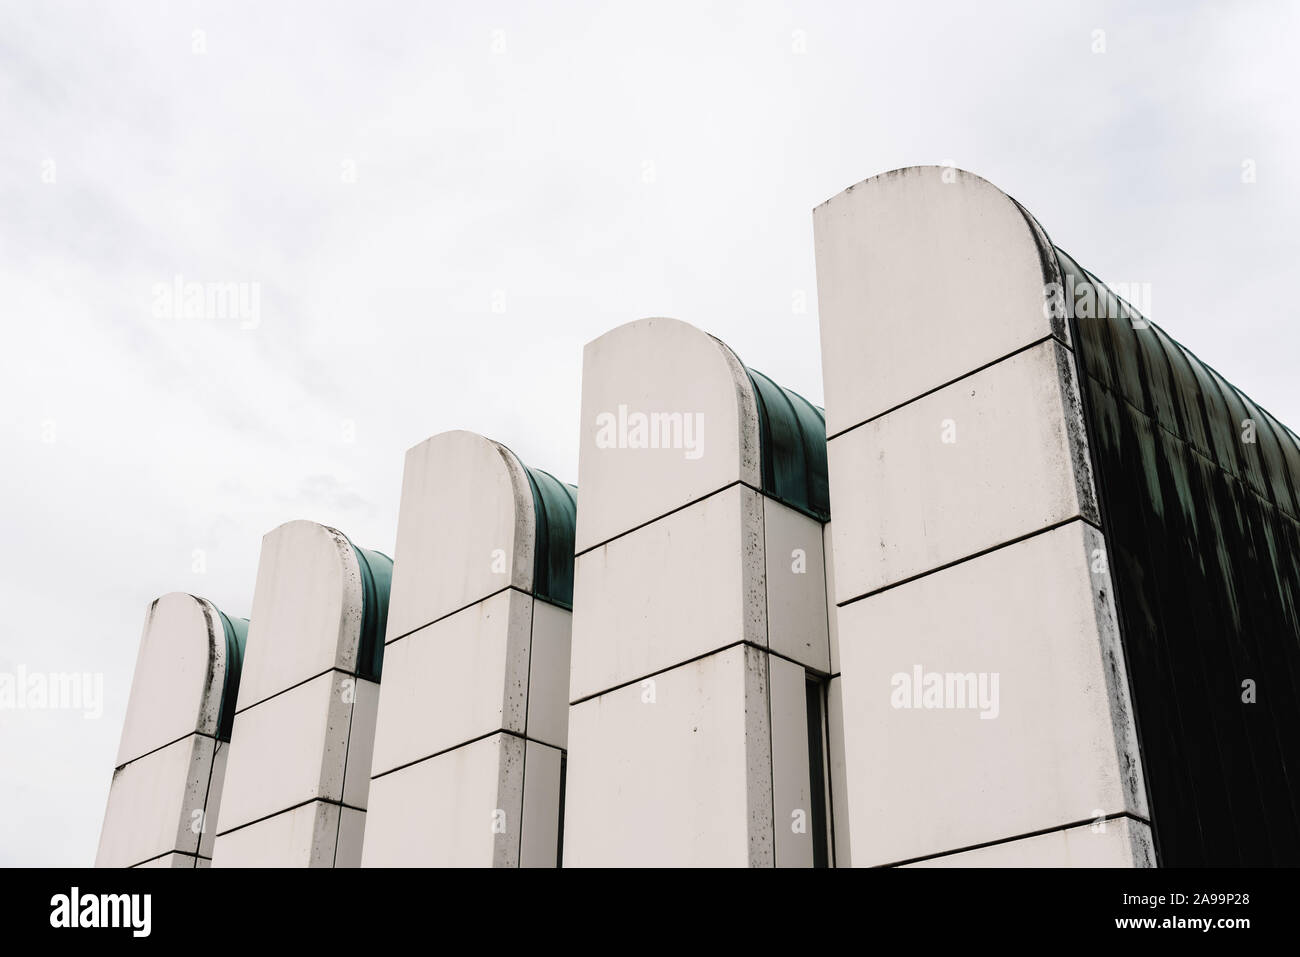 Berlin, Allemagne - 28 juillet 2019 : le Bauhaus Archive. C'est un musée du Bauhaus conçu par l'architecte Walter Gropius. Banque D'Images